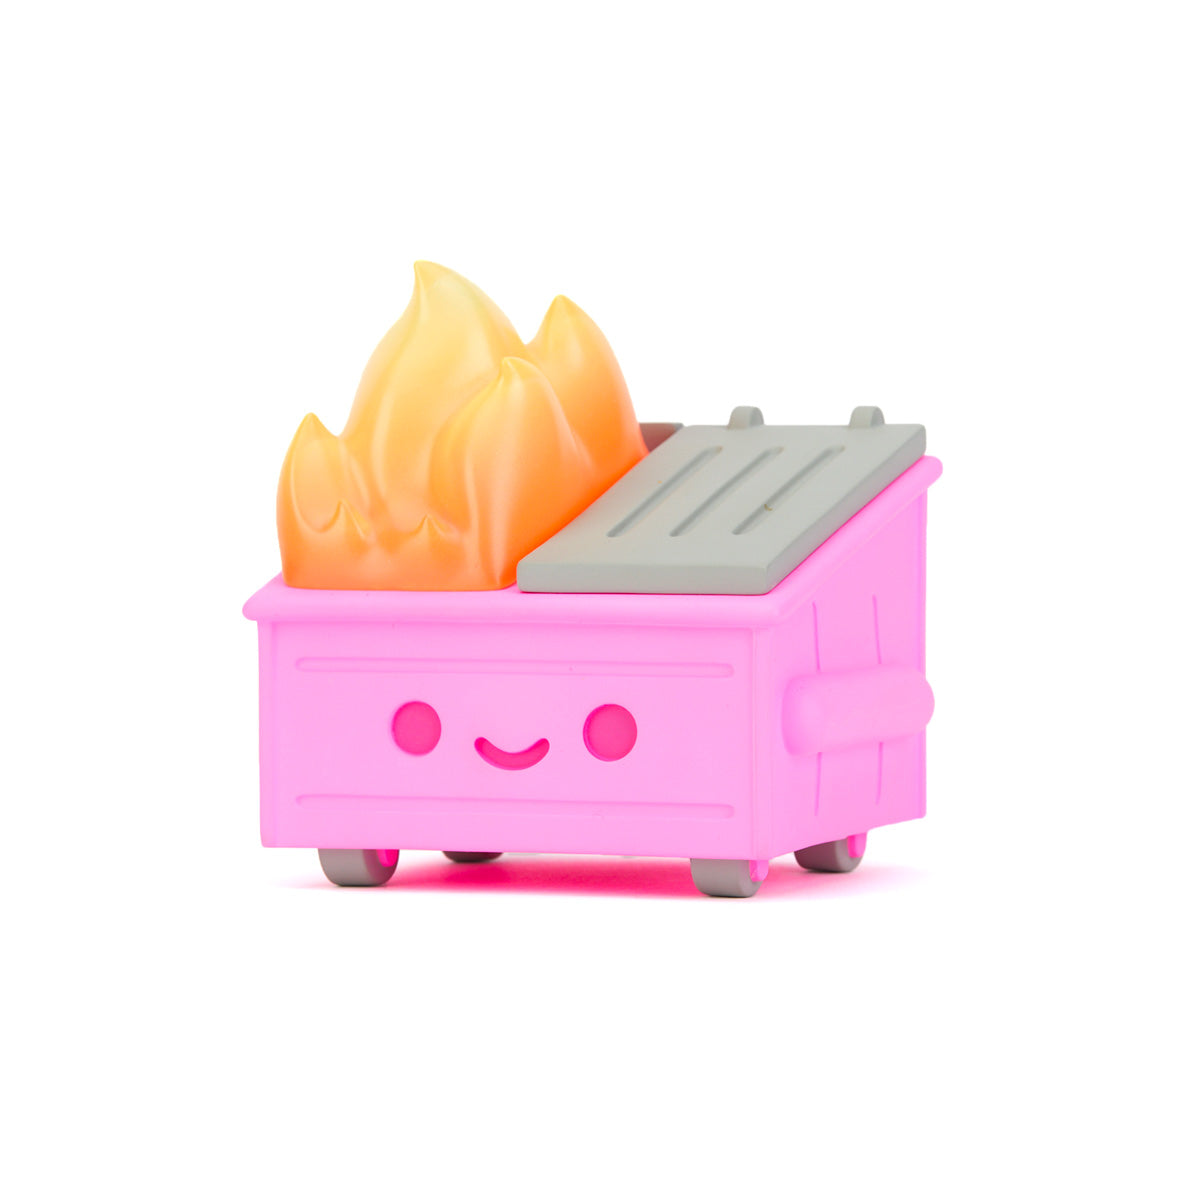 Dumpster Fire Vinyl Figure - Pepto Pink